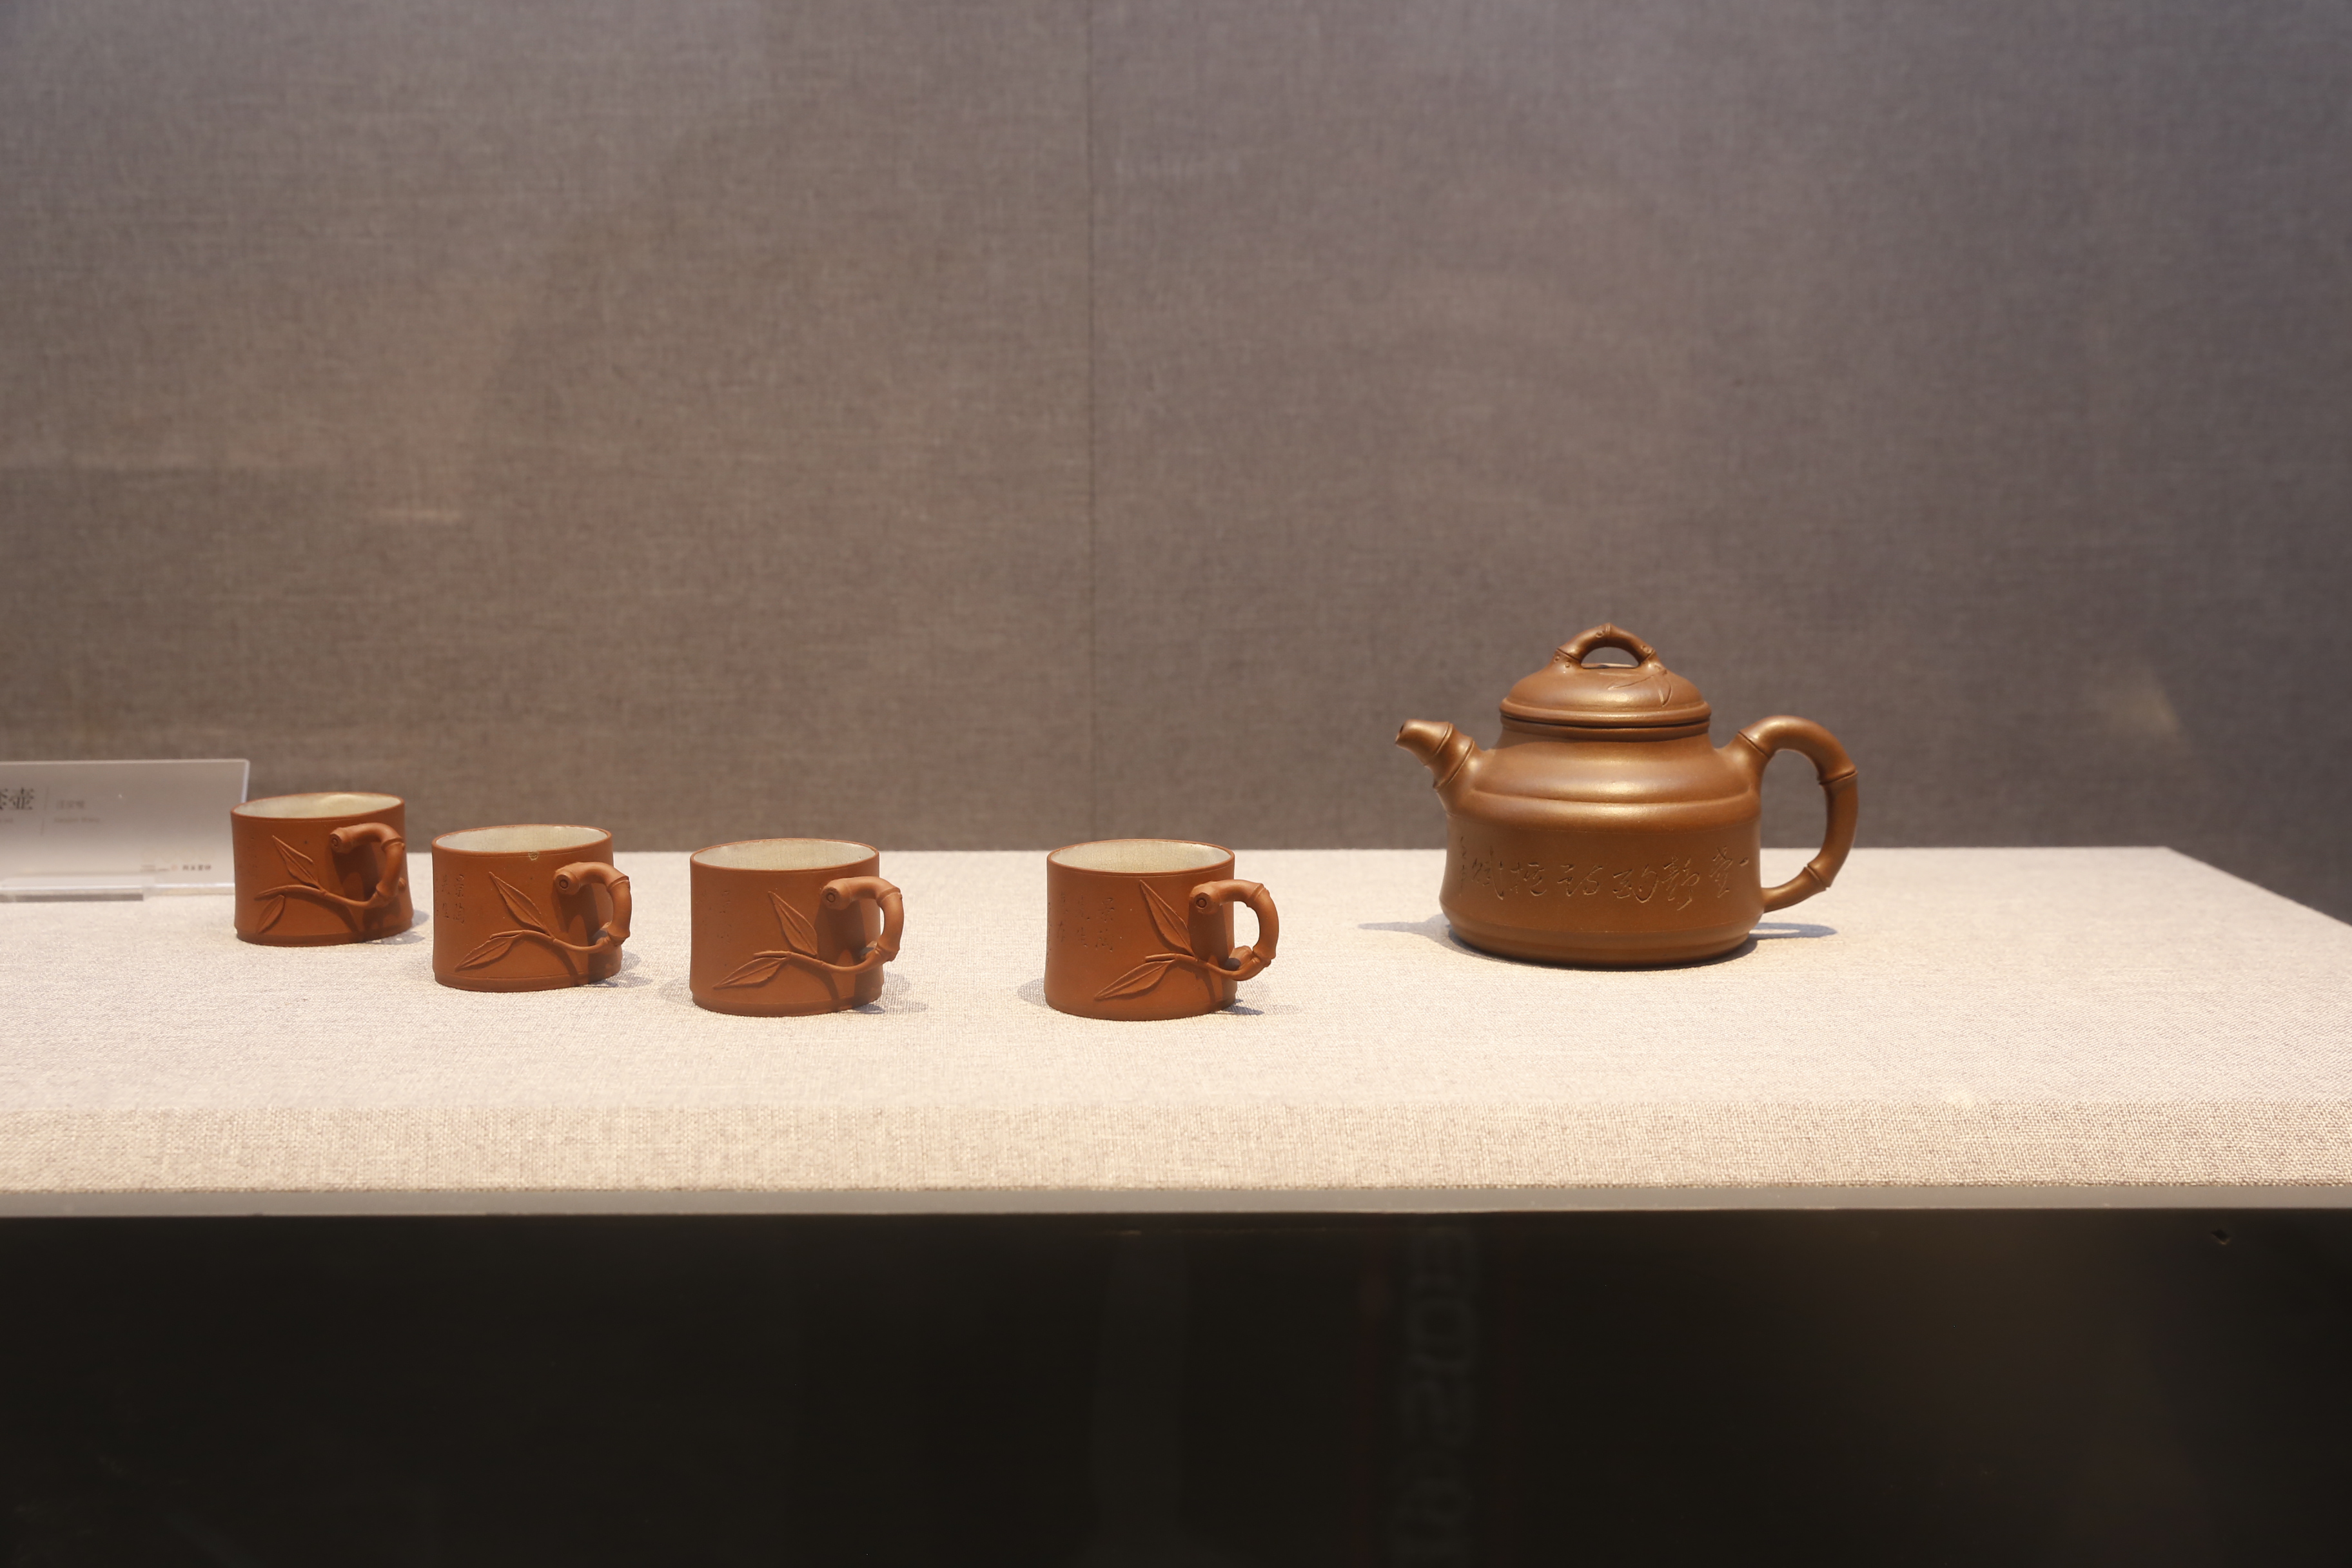 北京紫砂壶博物馆图片